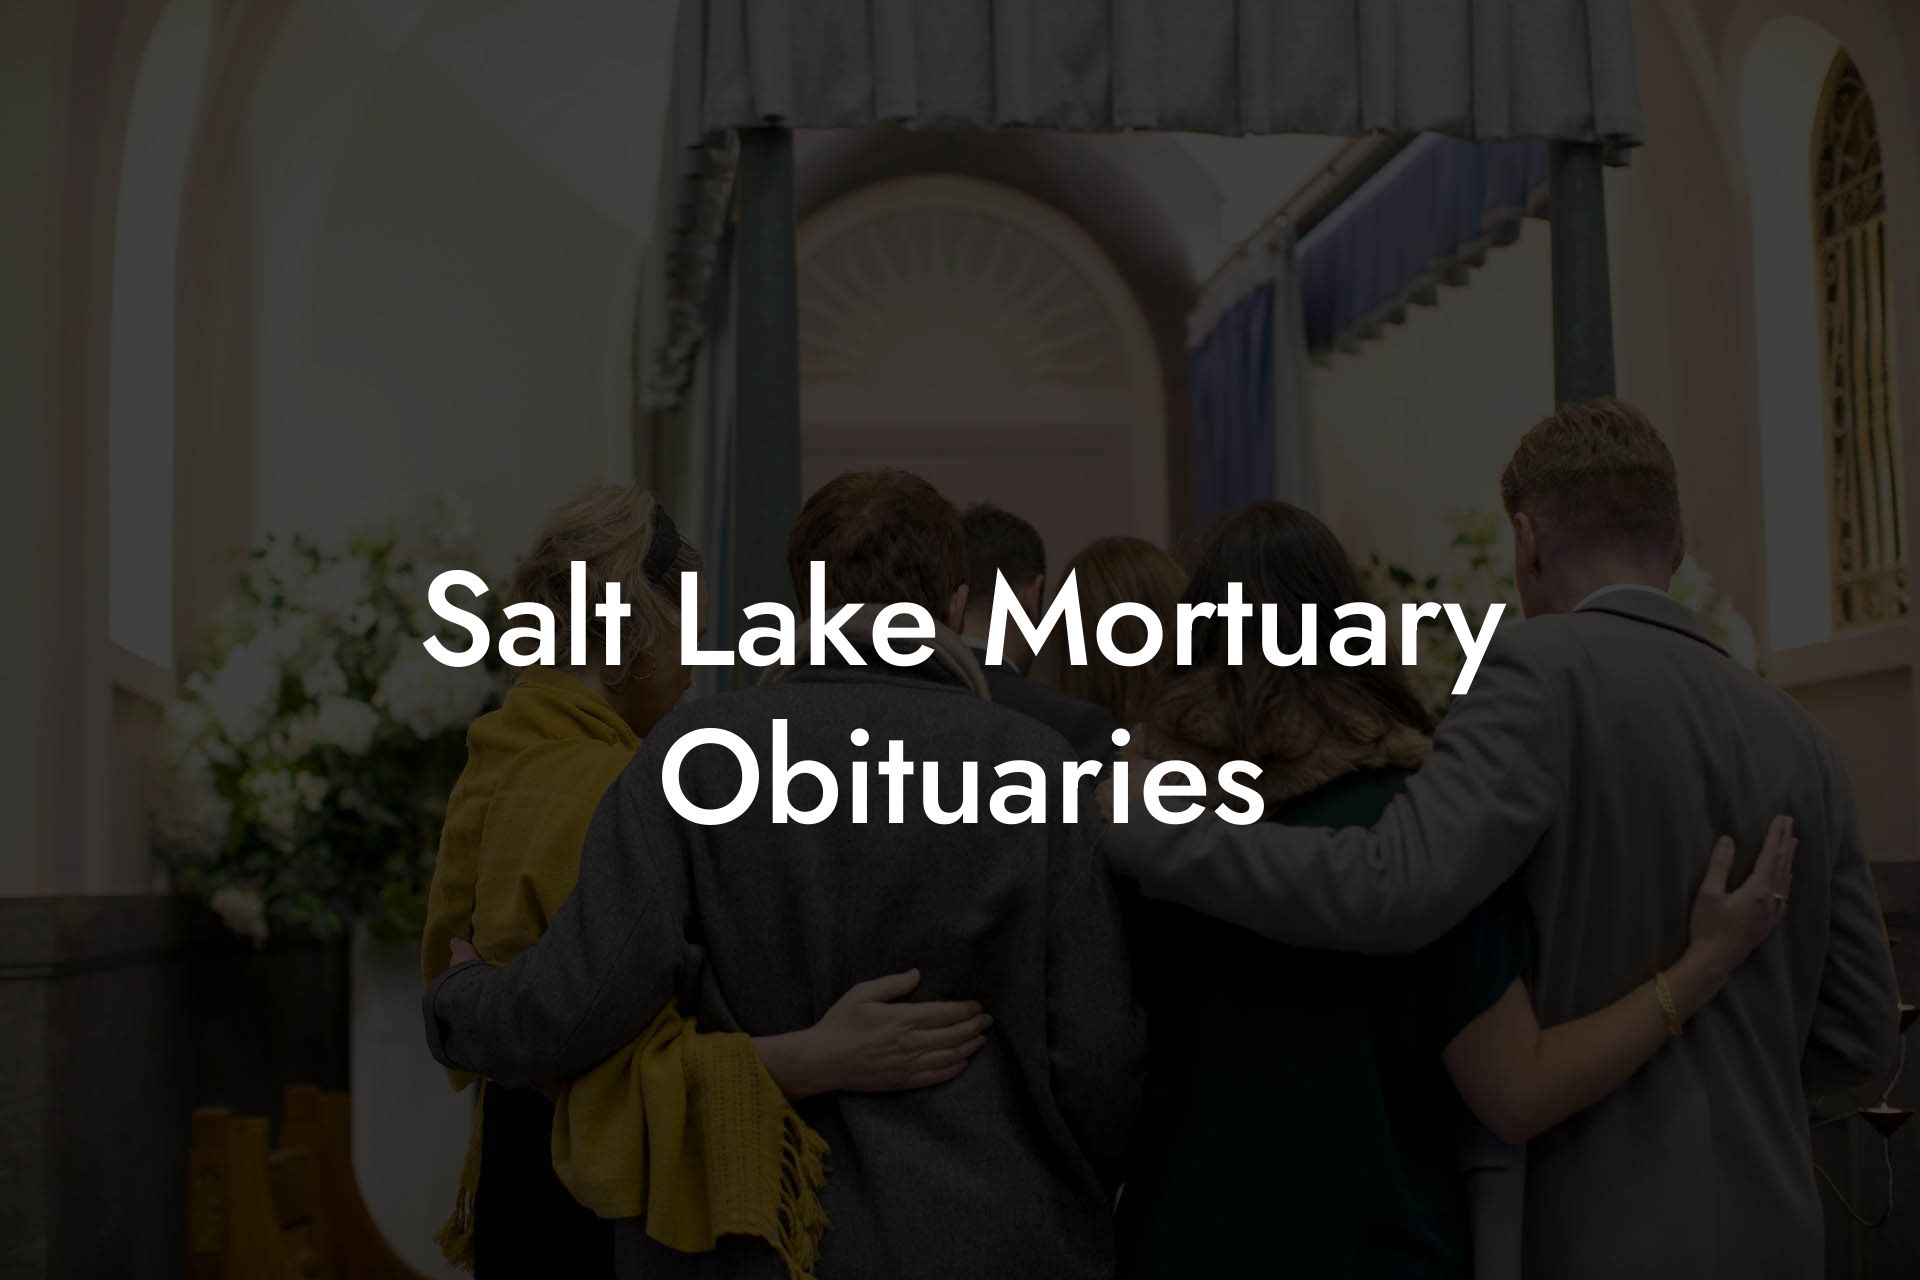 Salt Lake Mortuary Obituaries